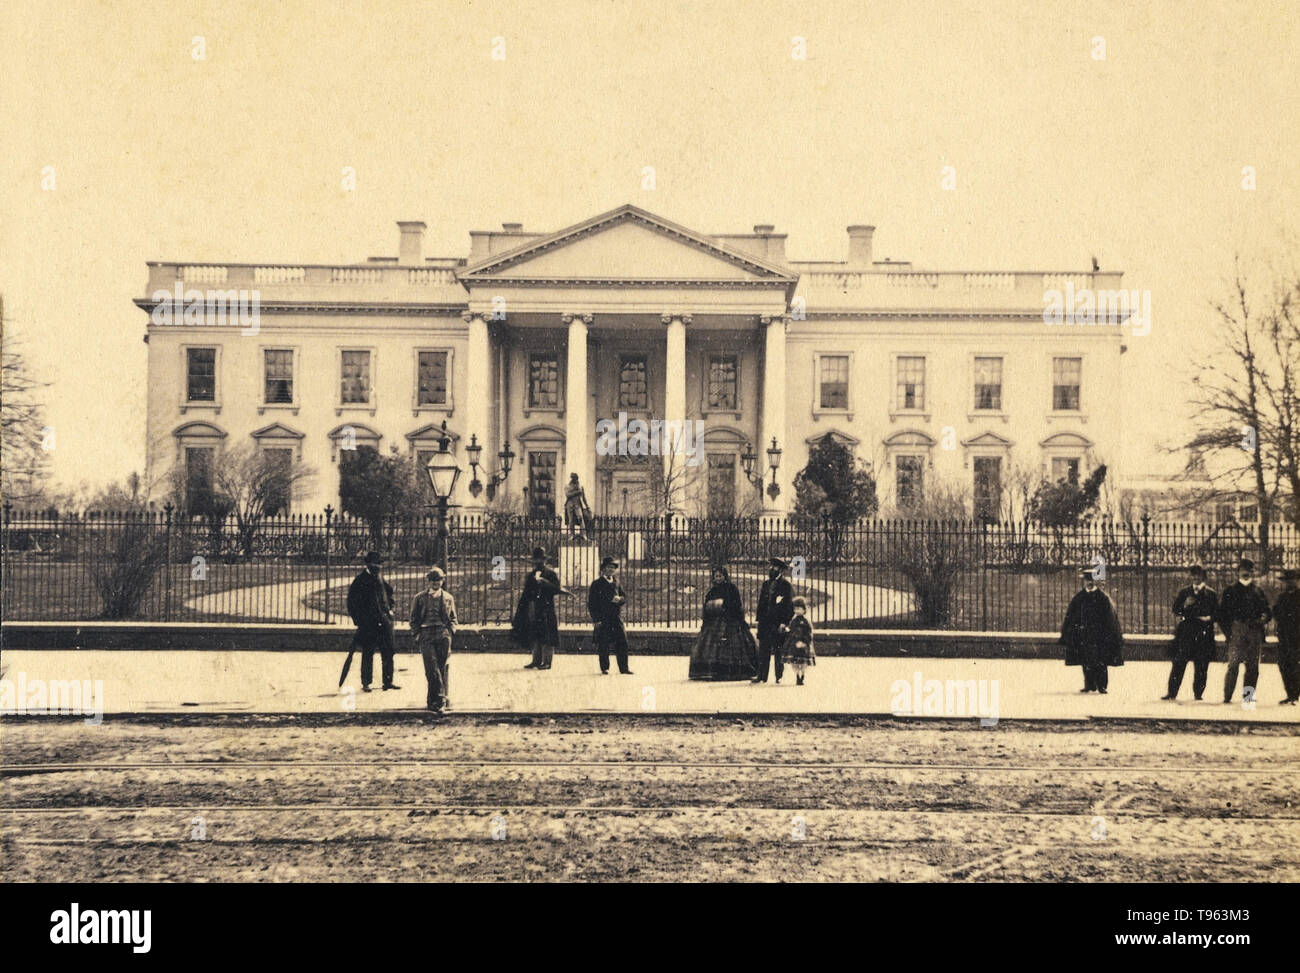 La Maison Blanche à Washington D.C., 1866. Photographié par George D. Wakely (États-Unis, Actif 1856 - 1880). À l'albumine argentique. Banque D'Images